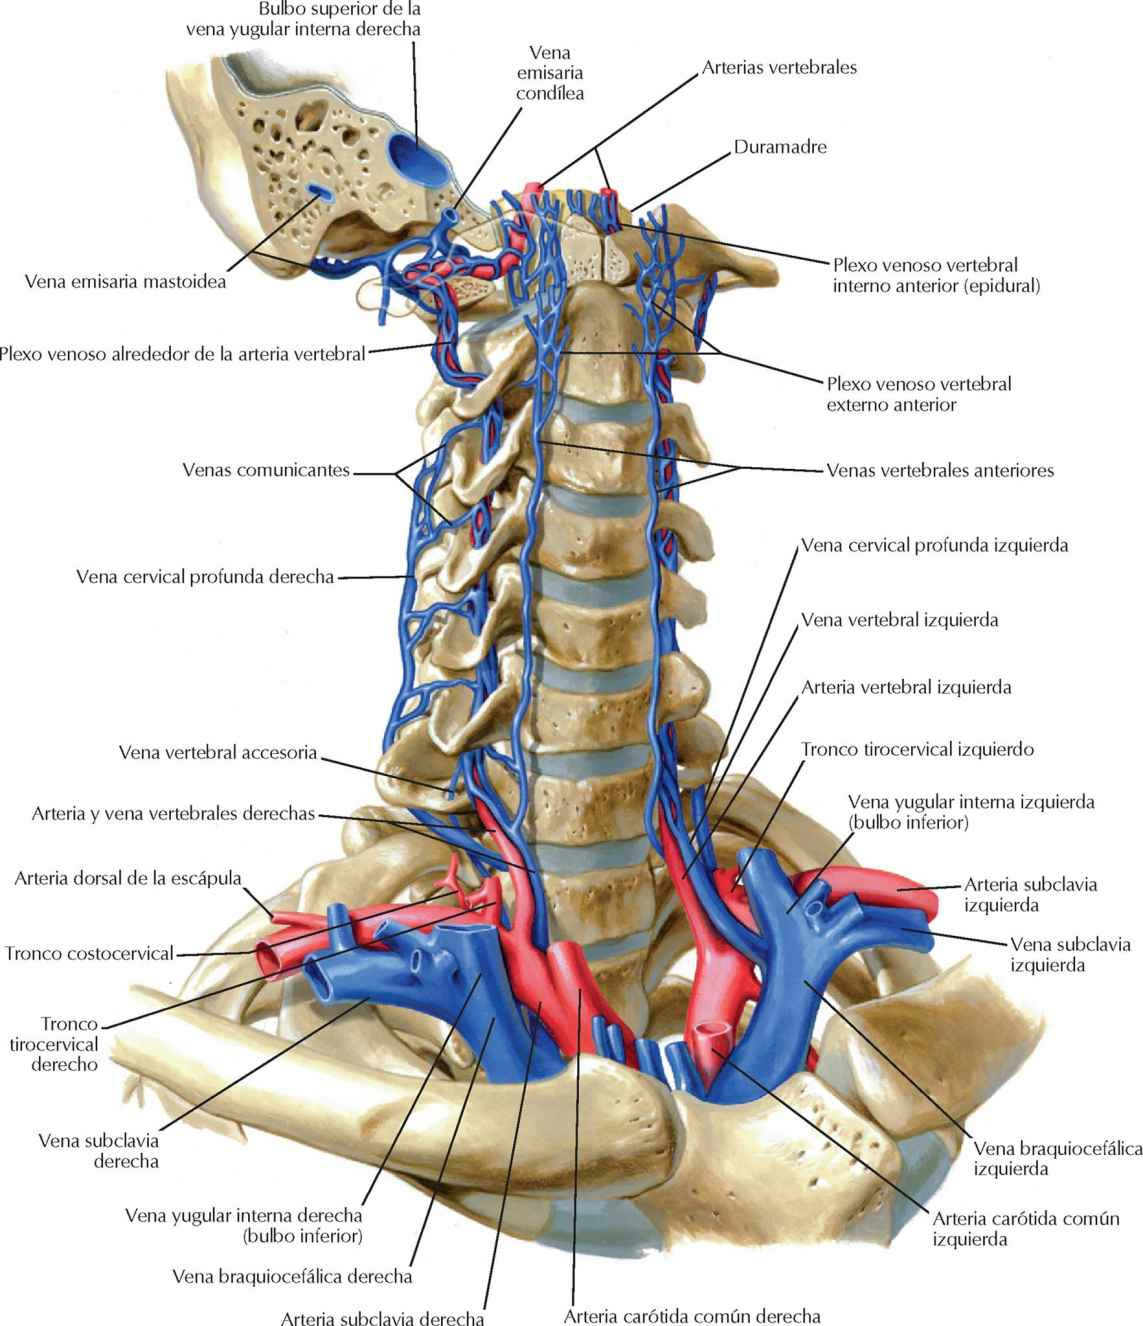 Venas de la columna vertebral: venas vertebrales